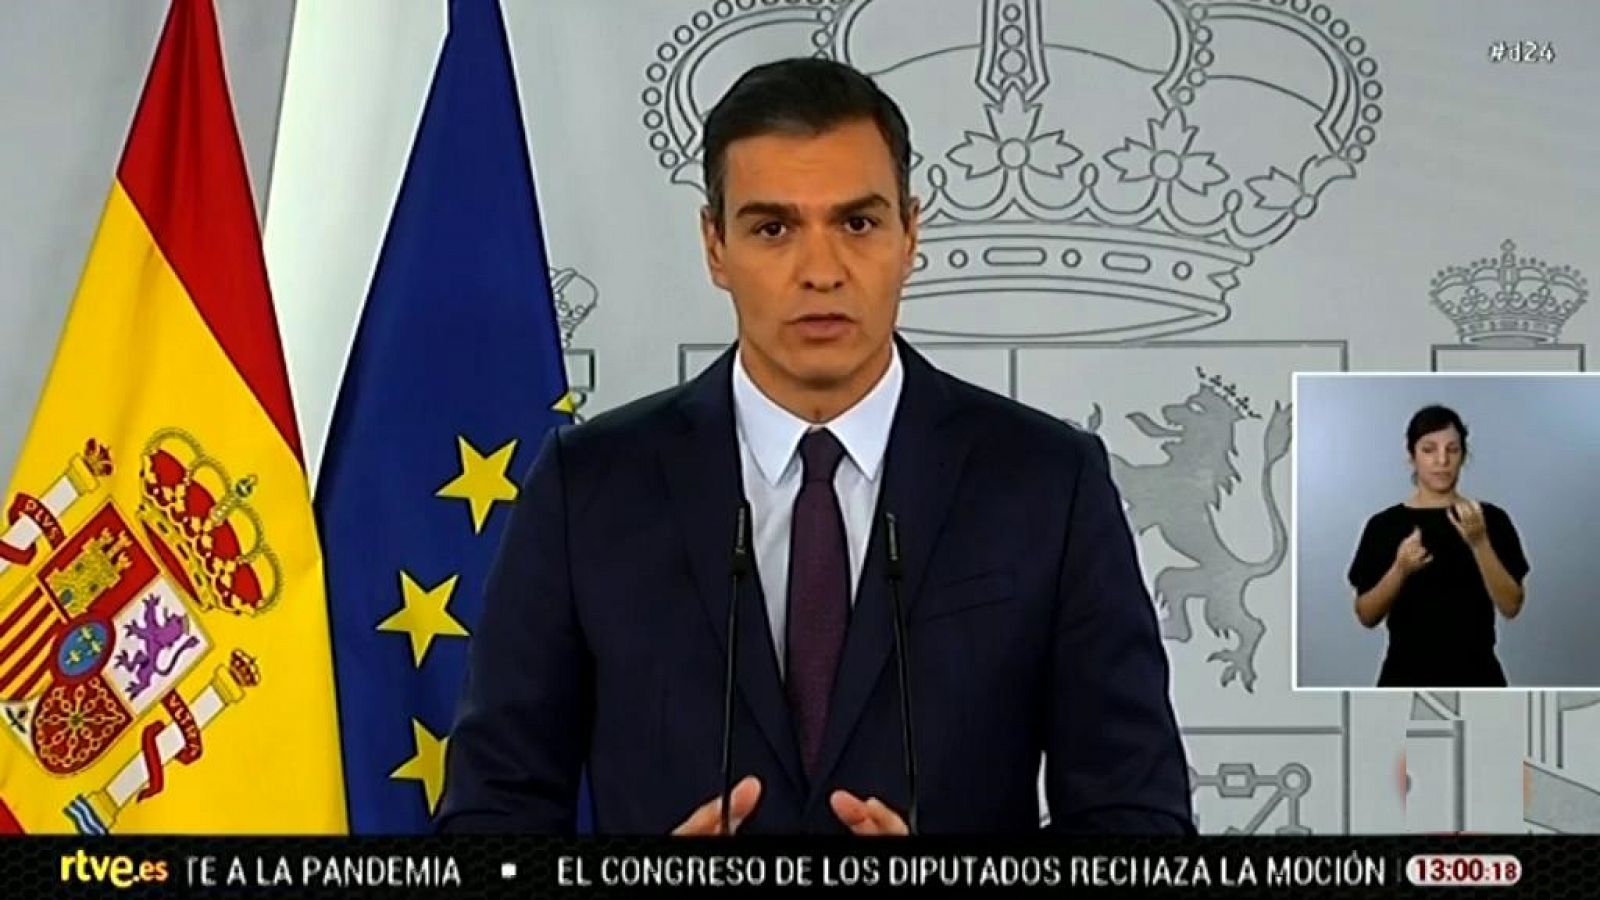 Especial informativo - Comparecencia del presidente del gobierno, Pedro Sánchez - 23/10/20 - RTVE.es